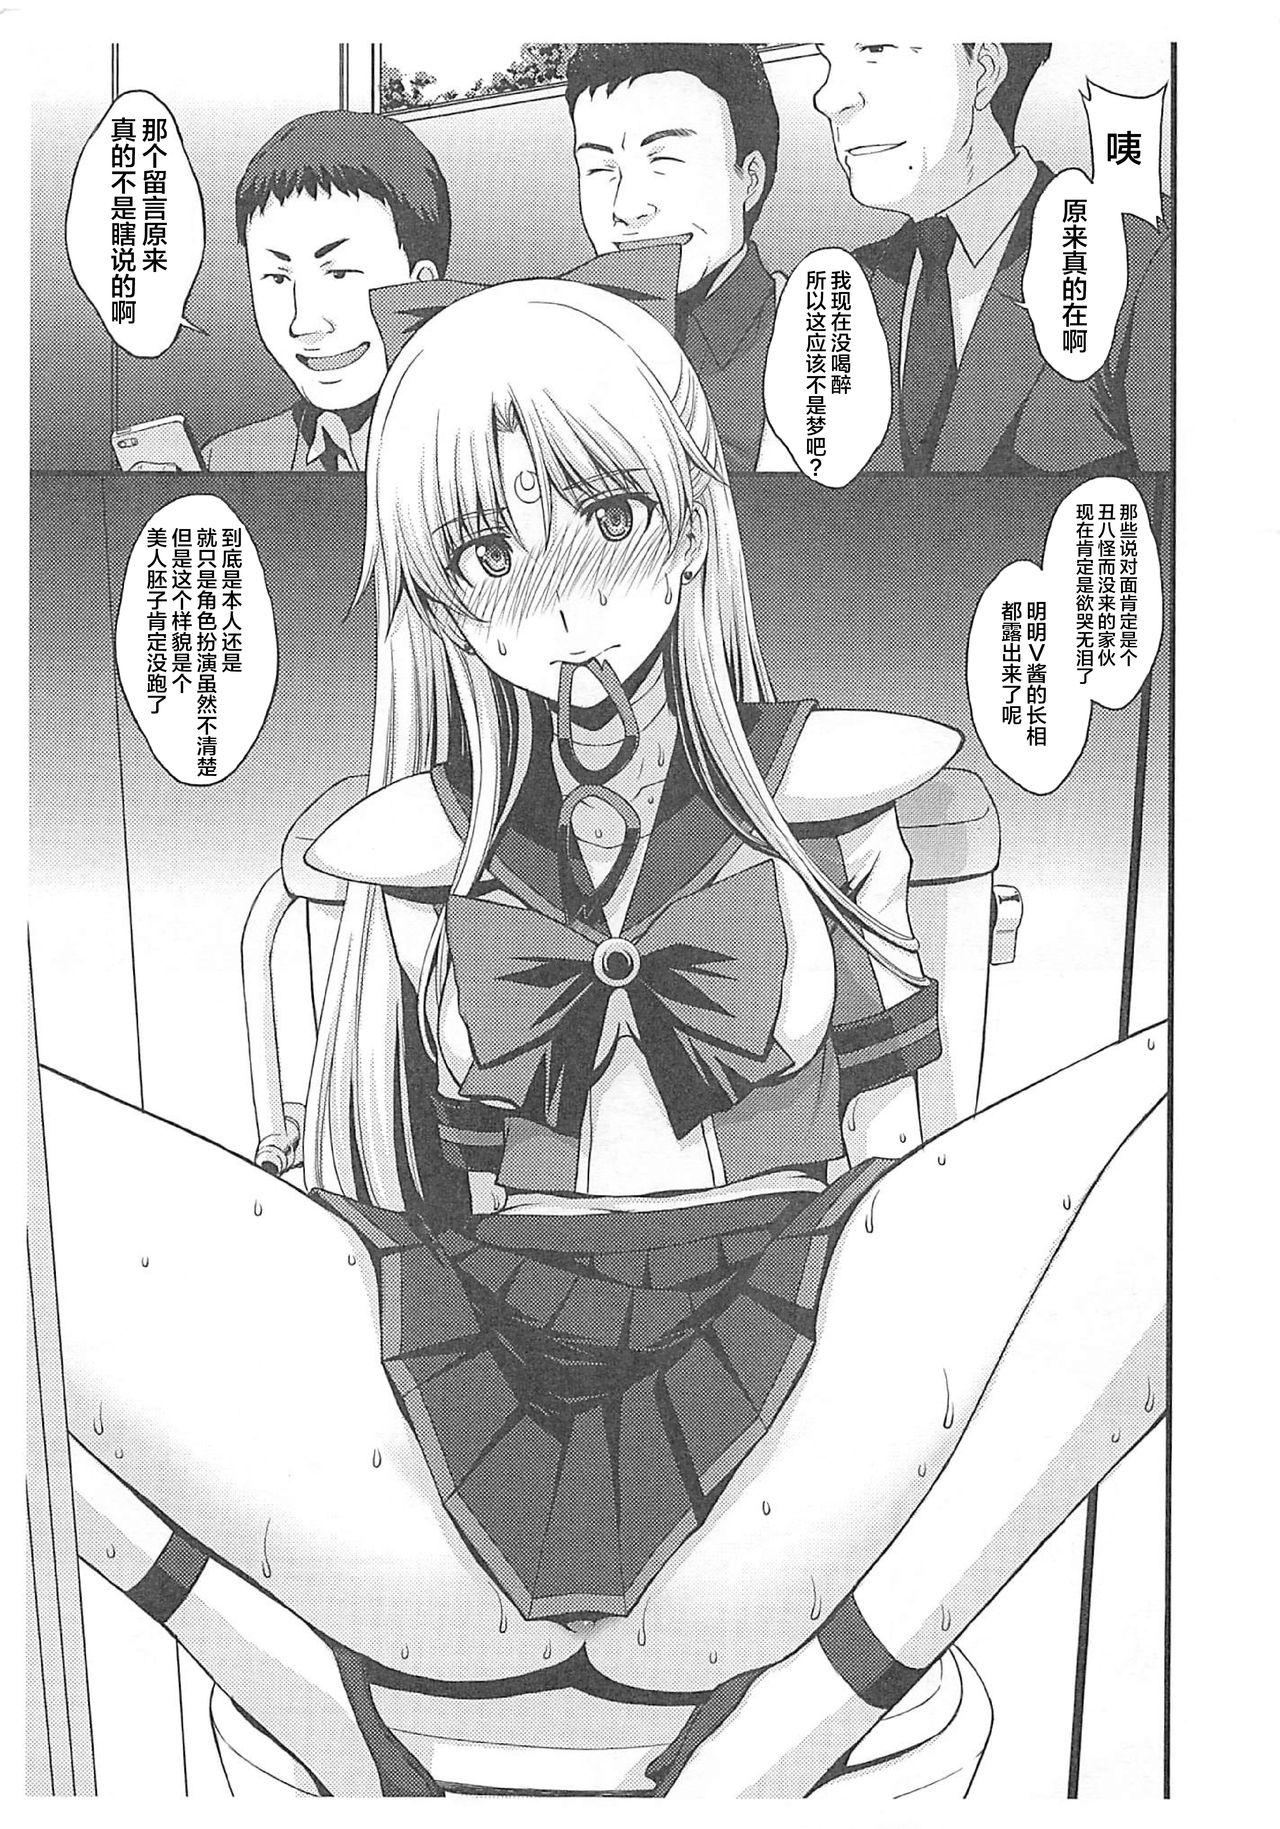 Free Amature Porn Natsu no maazu toppatsu kopii-shi - Sailor moon | bishoujo senshi sailor moon Verga - Page 10